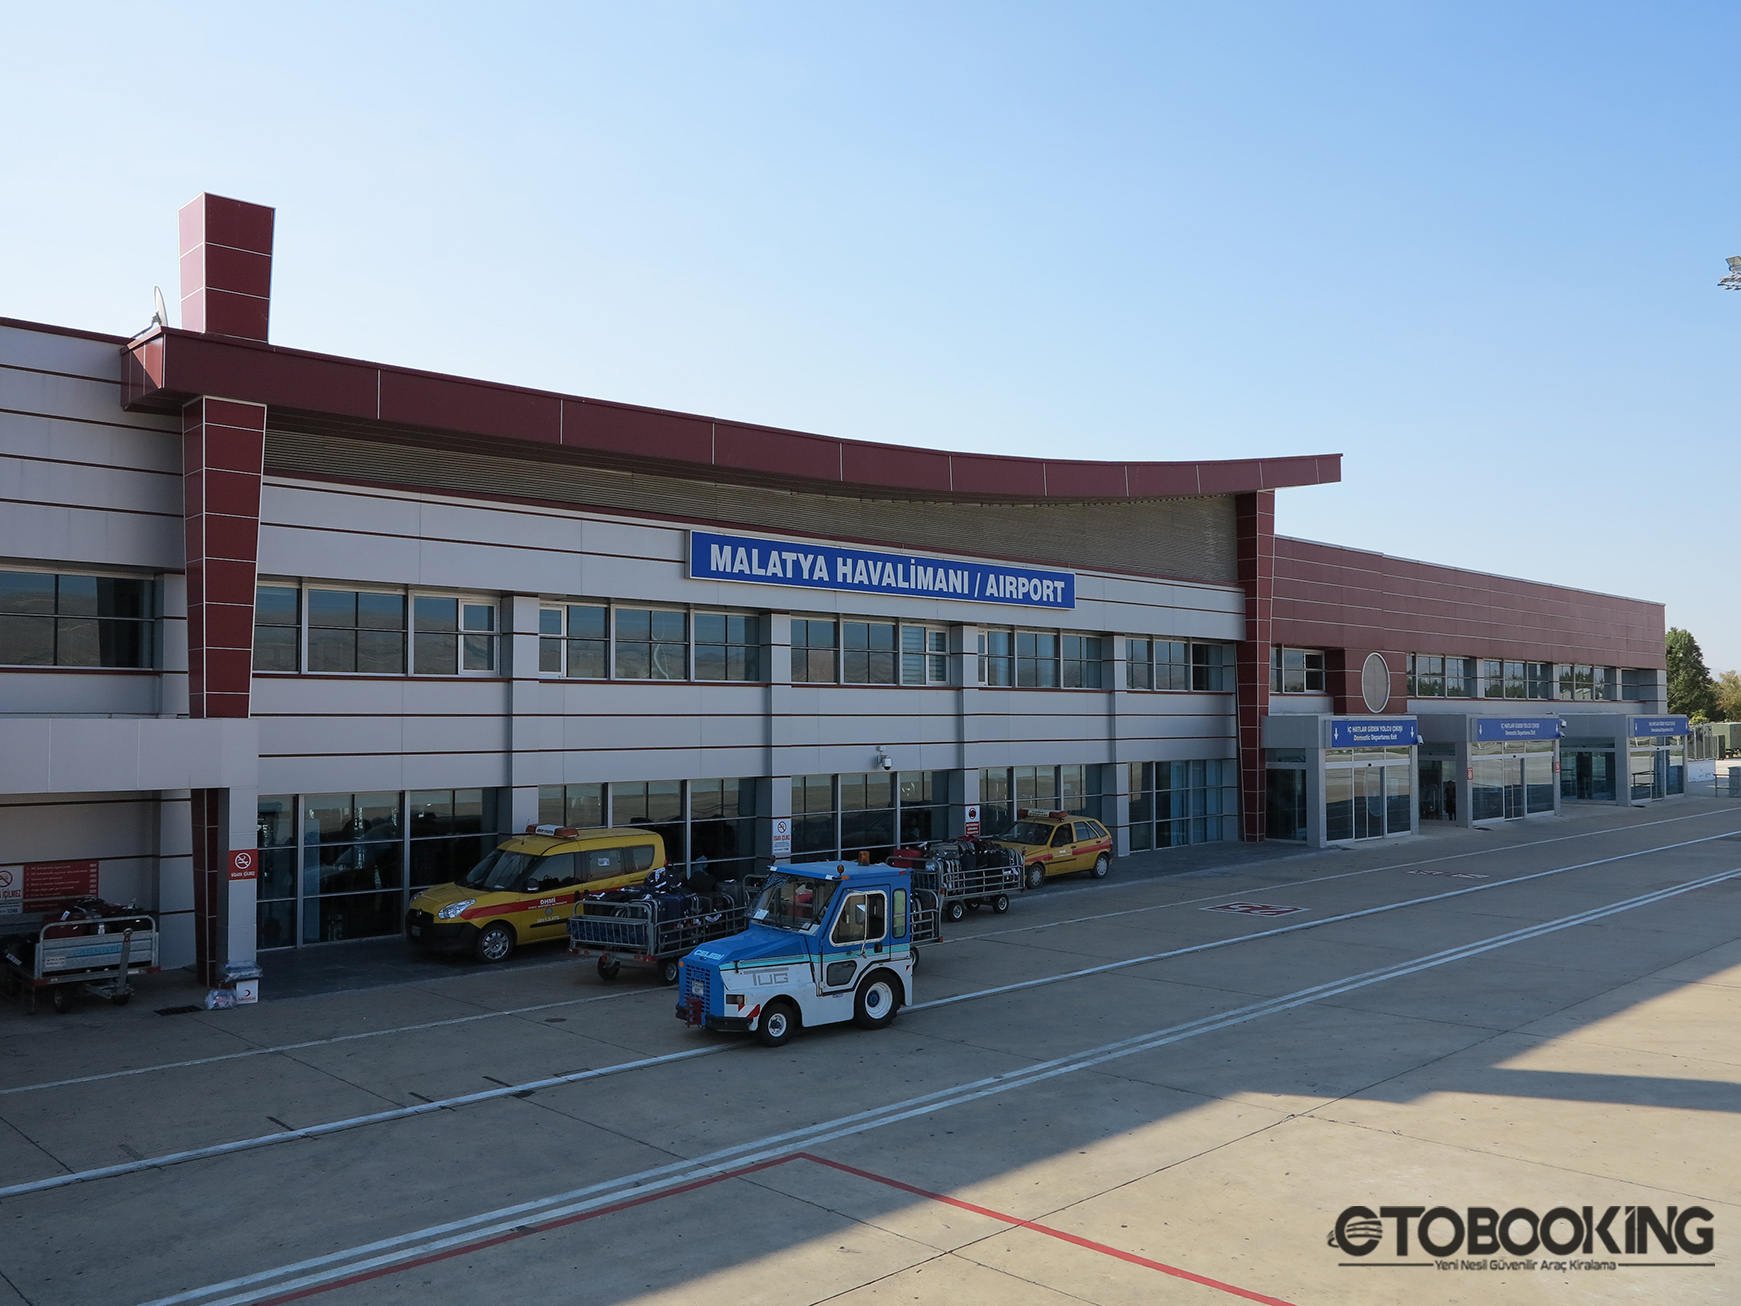 Location de voiture à l'aéroport de Malatya